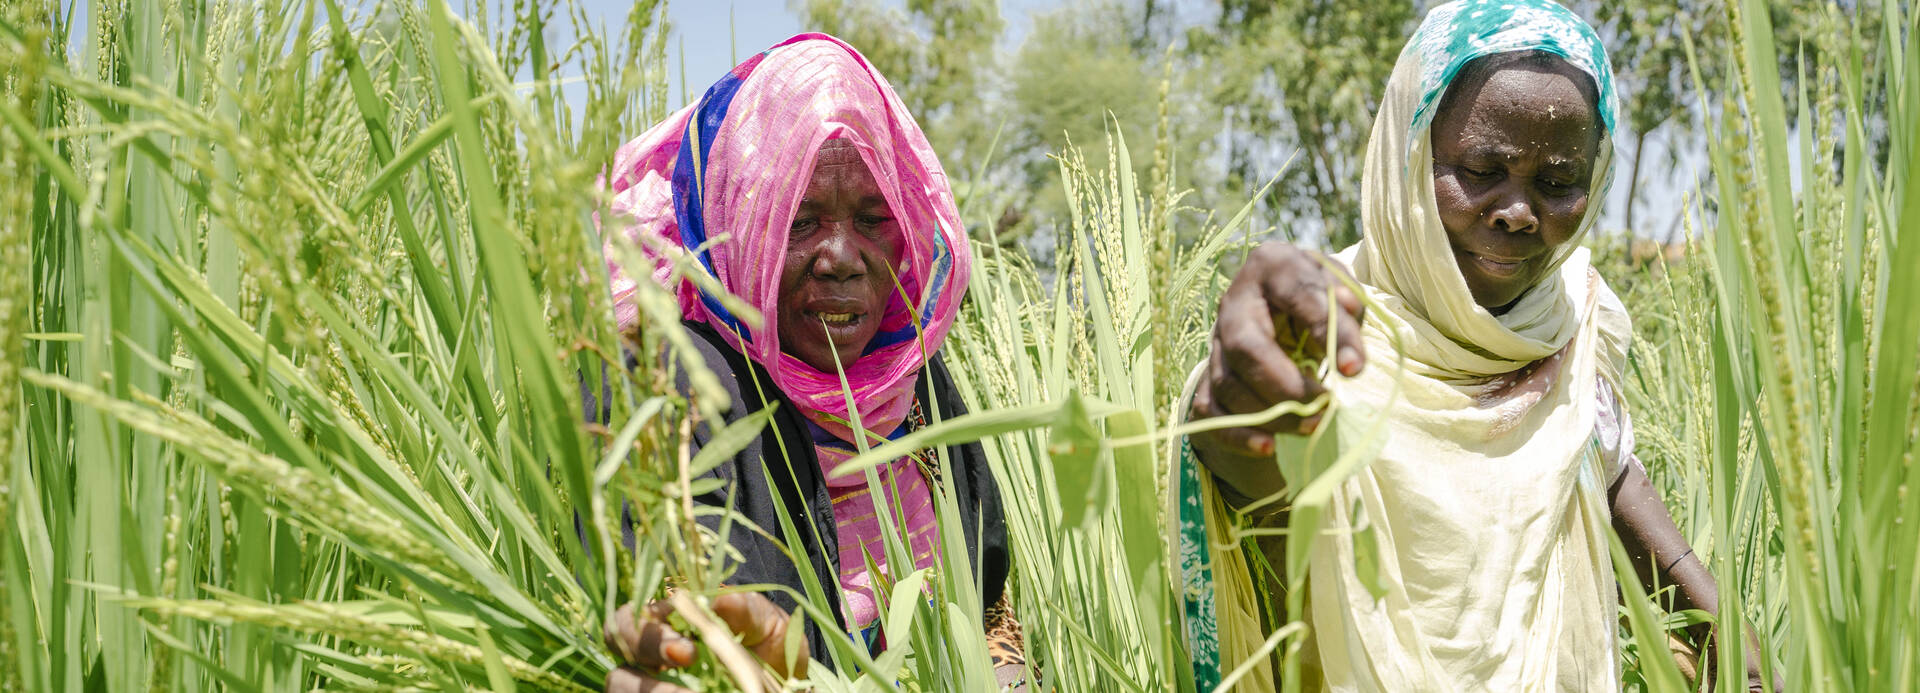 Zwei Frauen arbeiten in einem hoch gewachsenen grünen Getreidefeld in ihrem Gemeinschaftsgarten in Selibabi, Mauretanien.